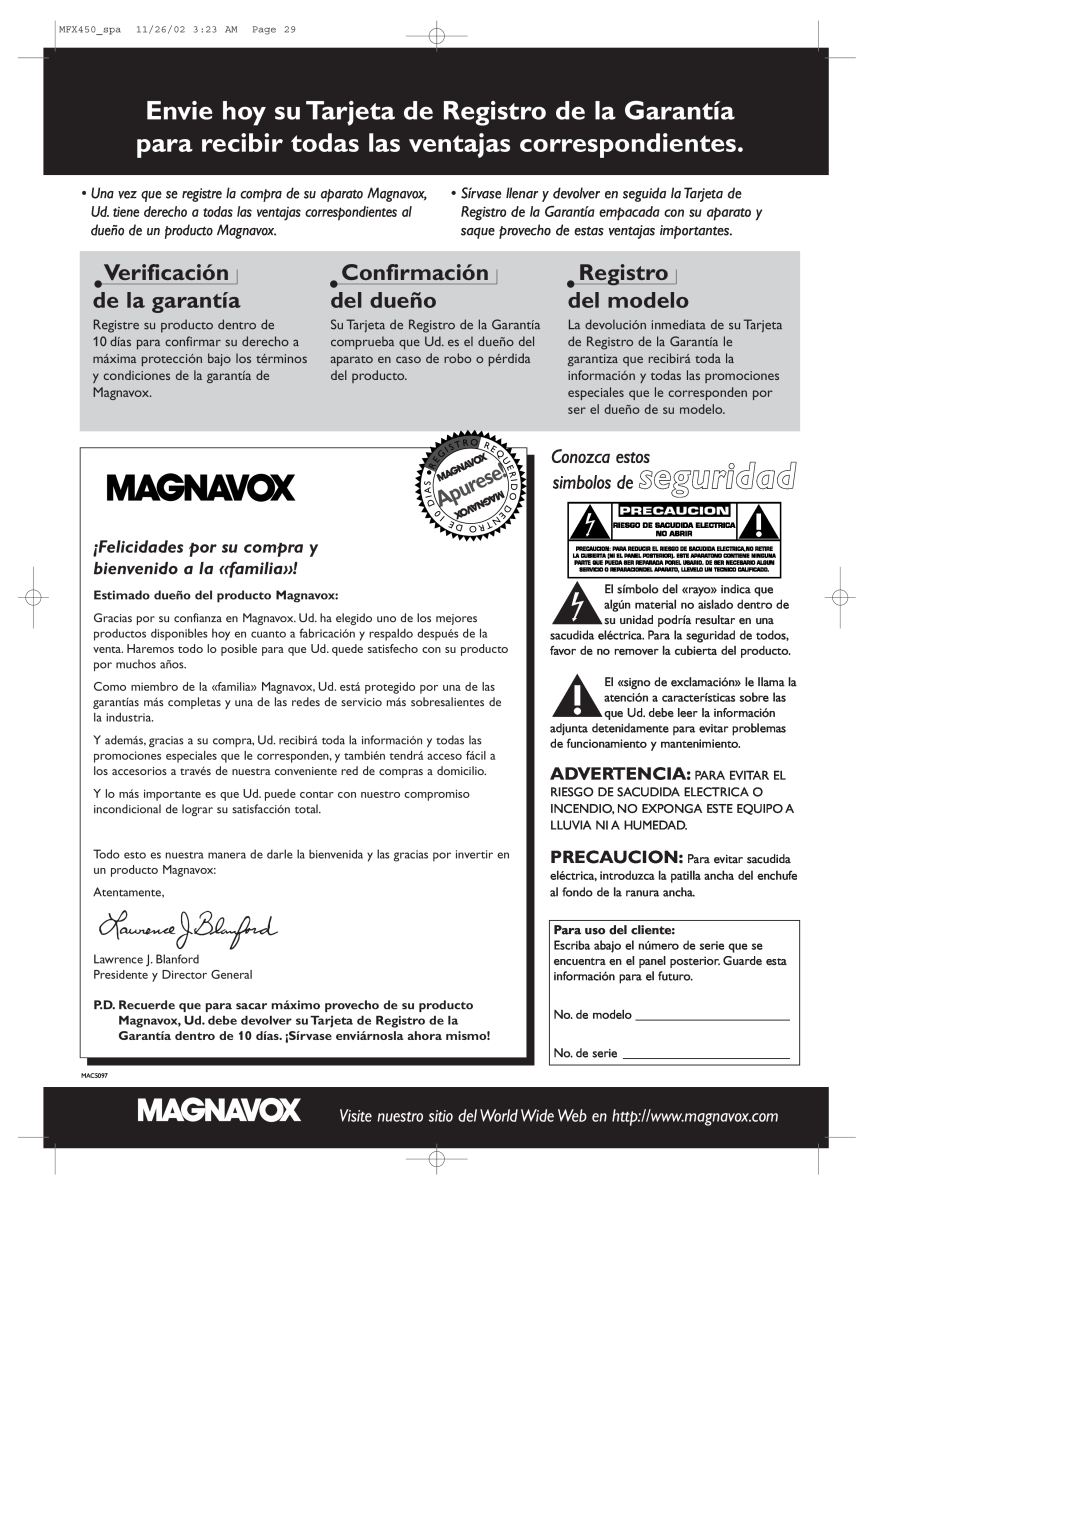 Magnavox MSW 990/17, MCS 990/17 manual Verificación de la garantía, Confirmación del dueño, Registro del modelo, Apurese 